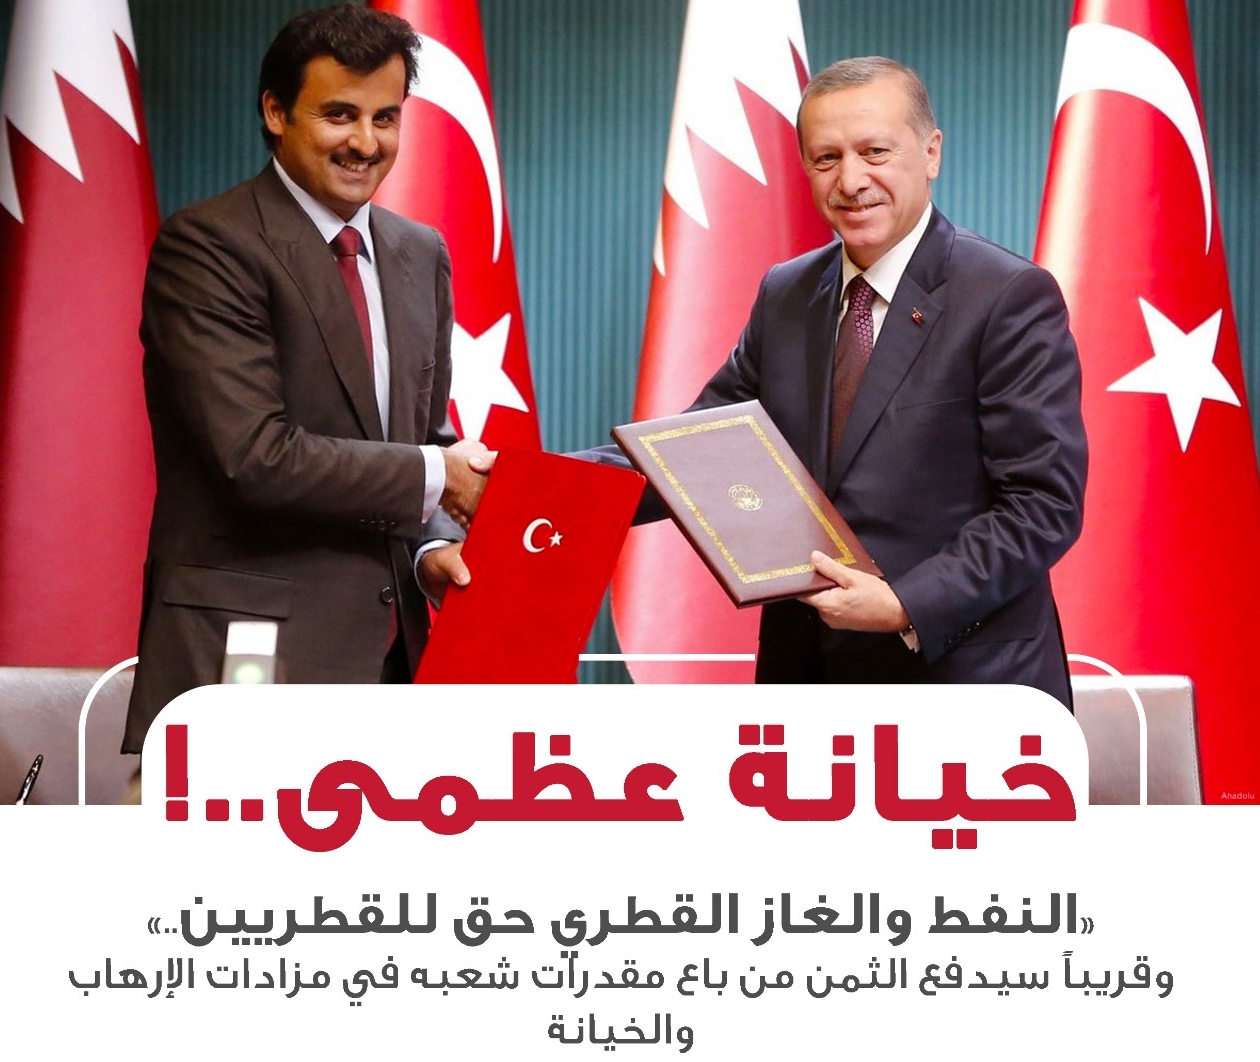 تركيا تحلب قطر .. الدوحة تهدر ثرواتها بأبخس الأثمان لأجل عيون أردوغان